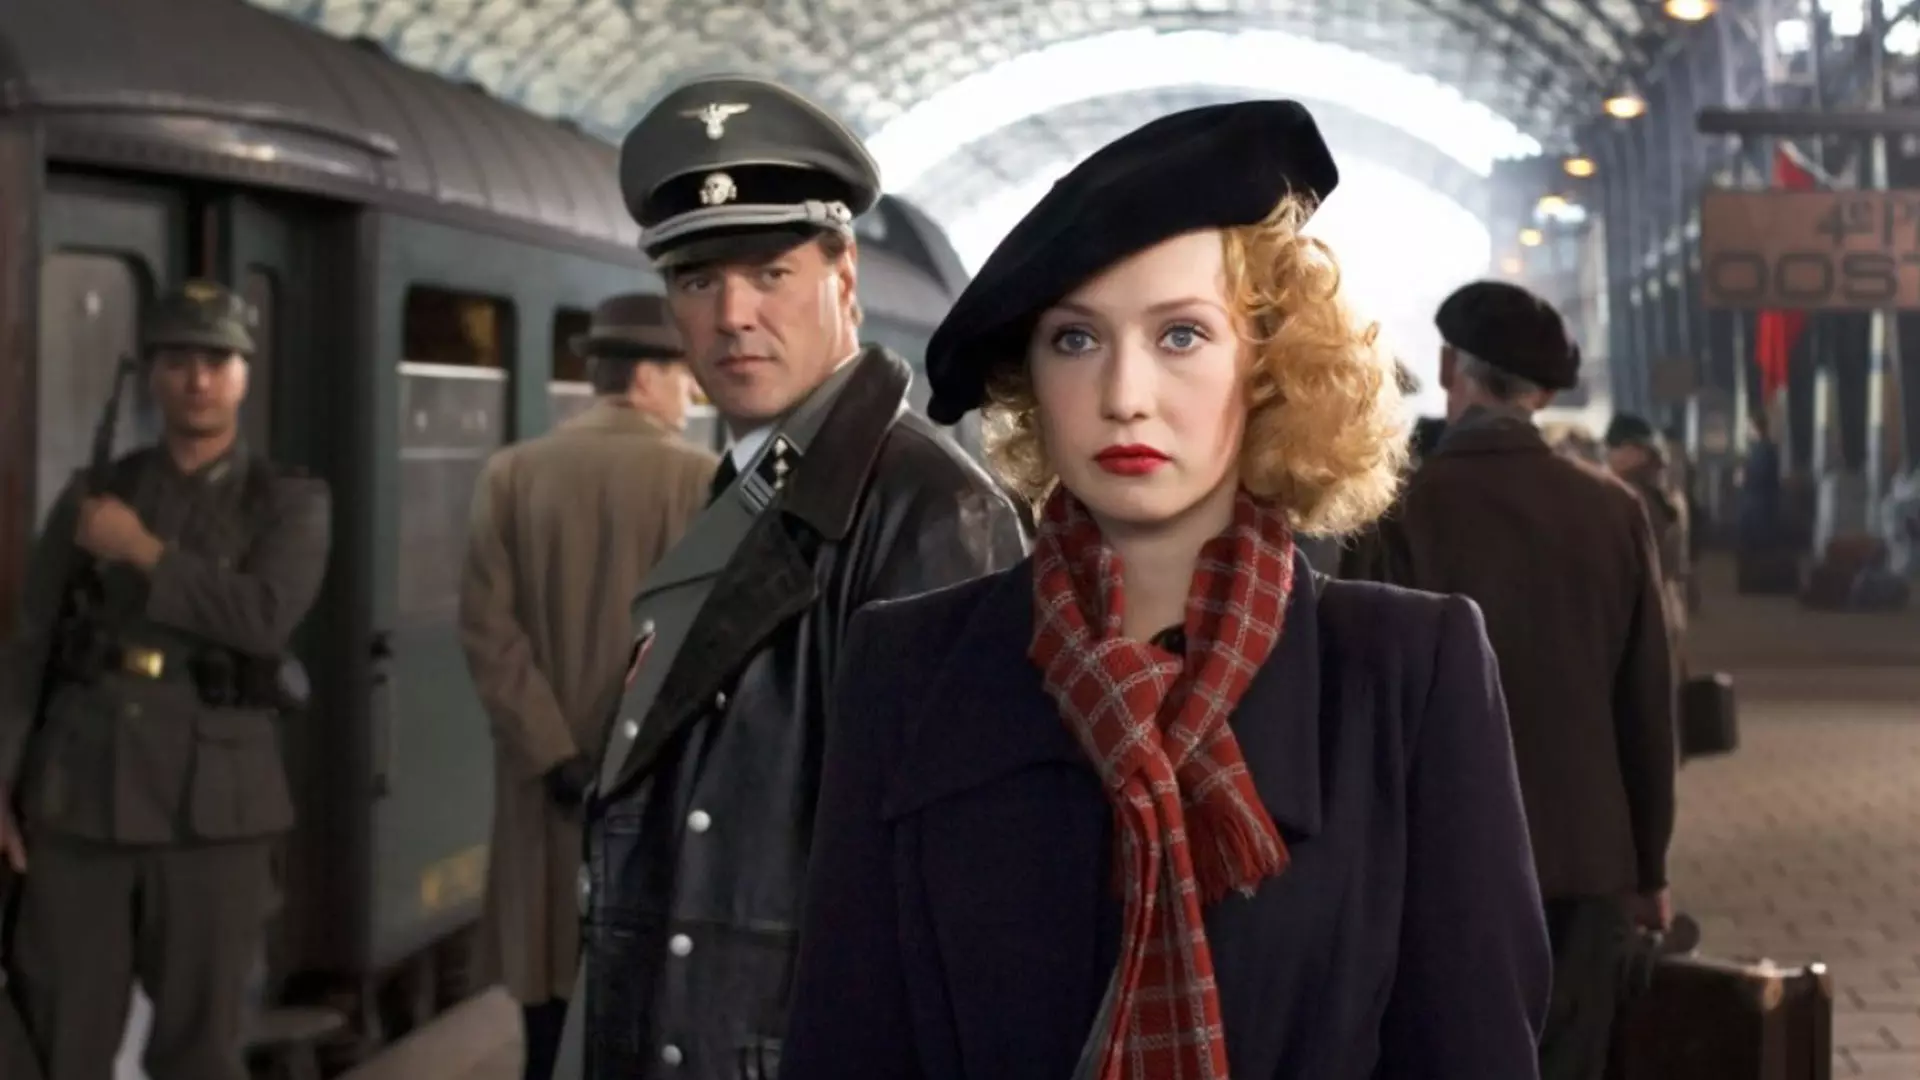 تام هافمن در حال نگاه کردن به کاریس ون هویتن در ایستگاه قطار در فیلم Black Book